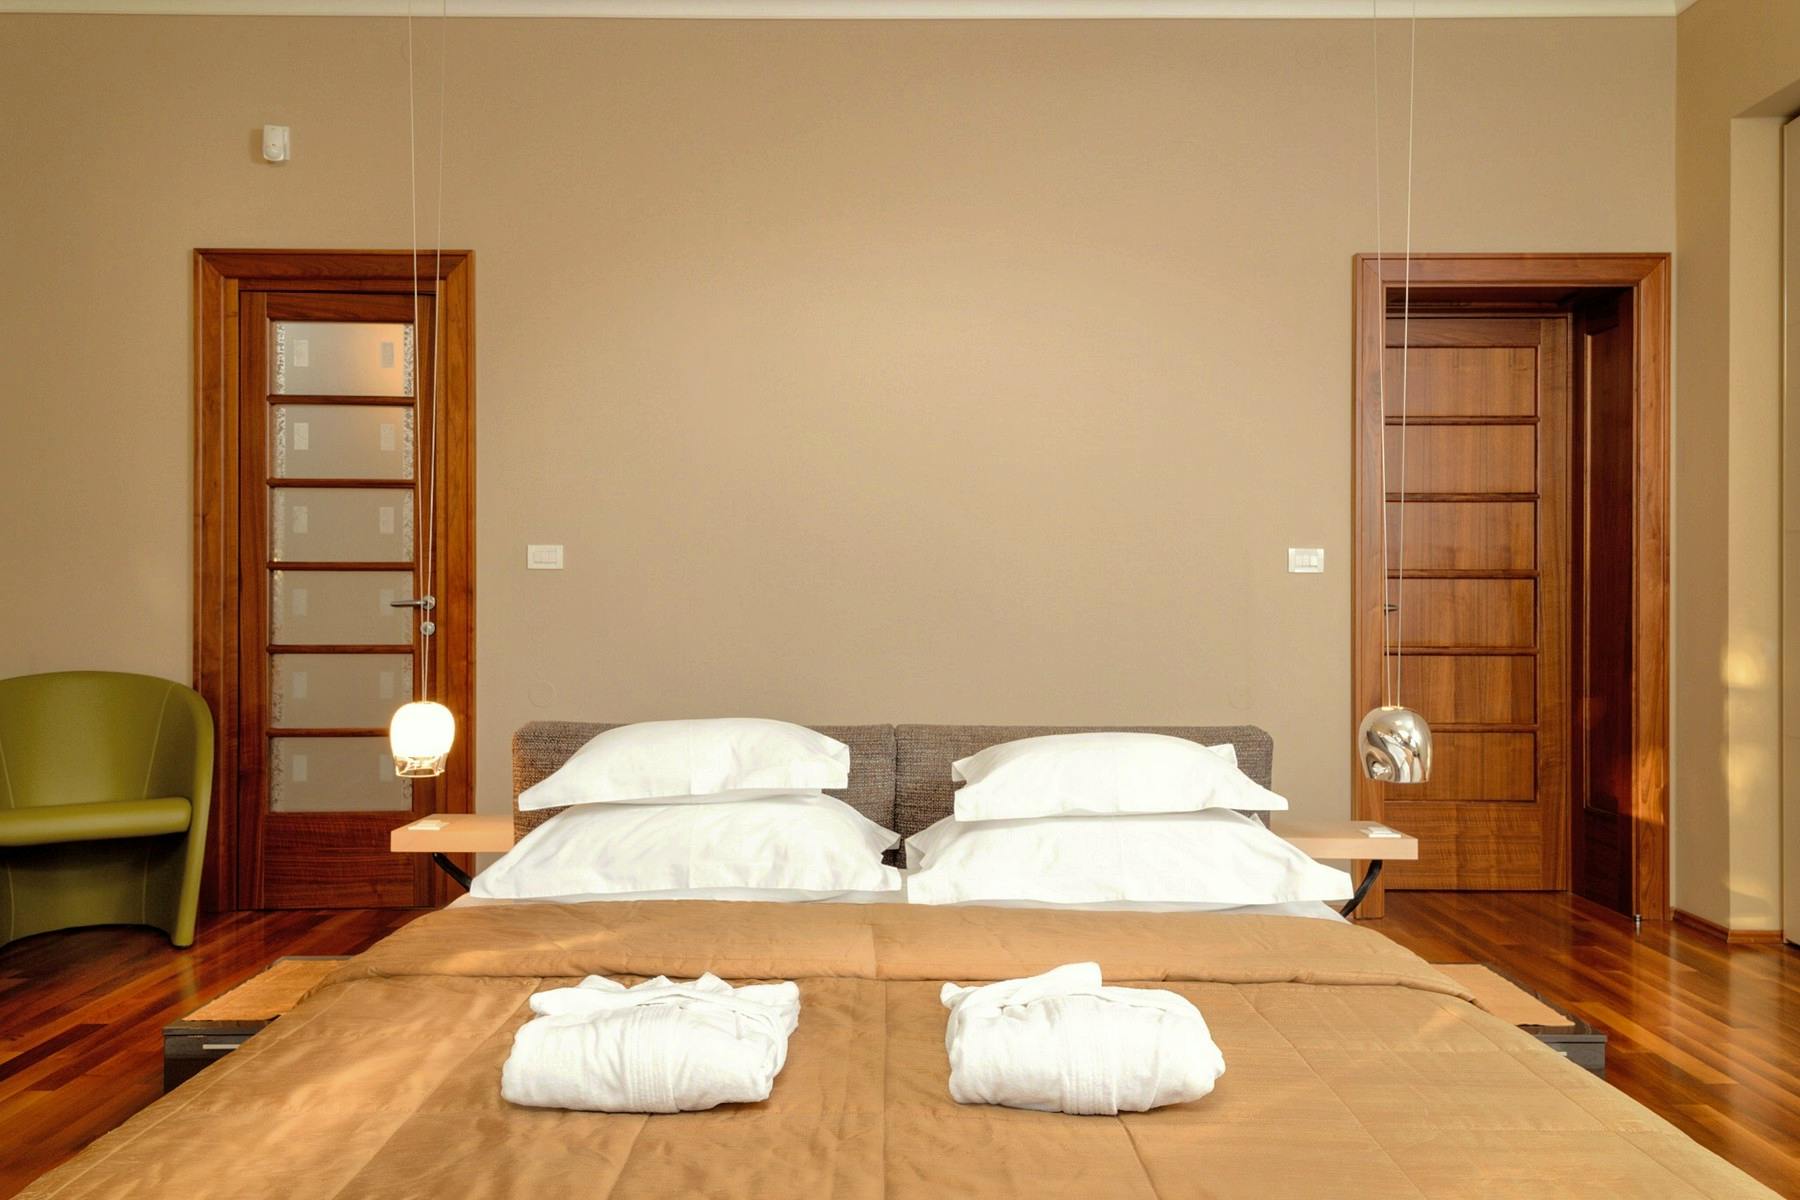 Bedroom area in the villa 